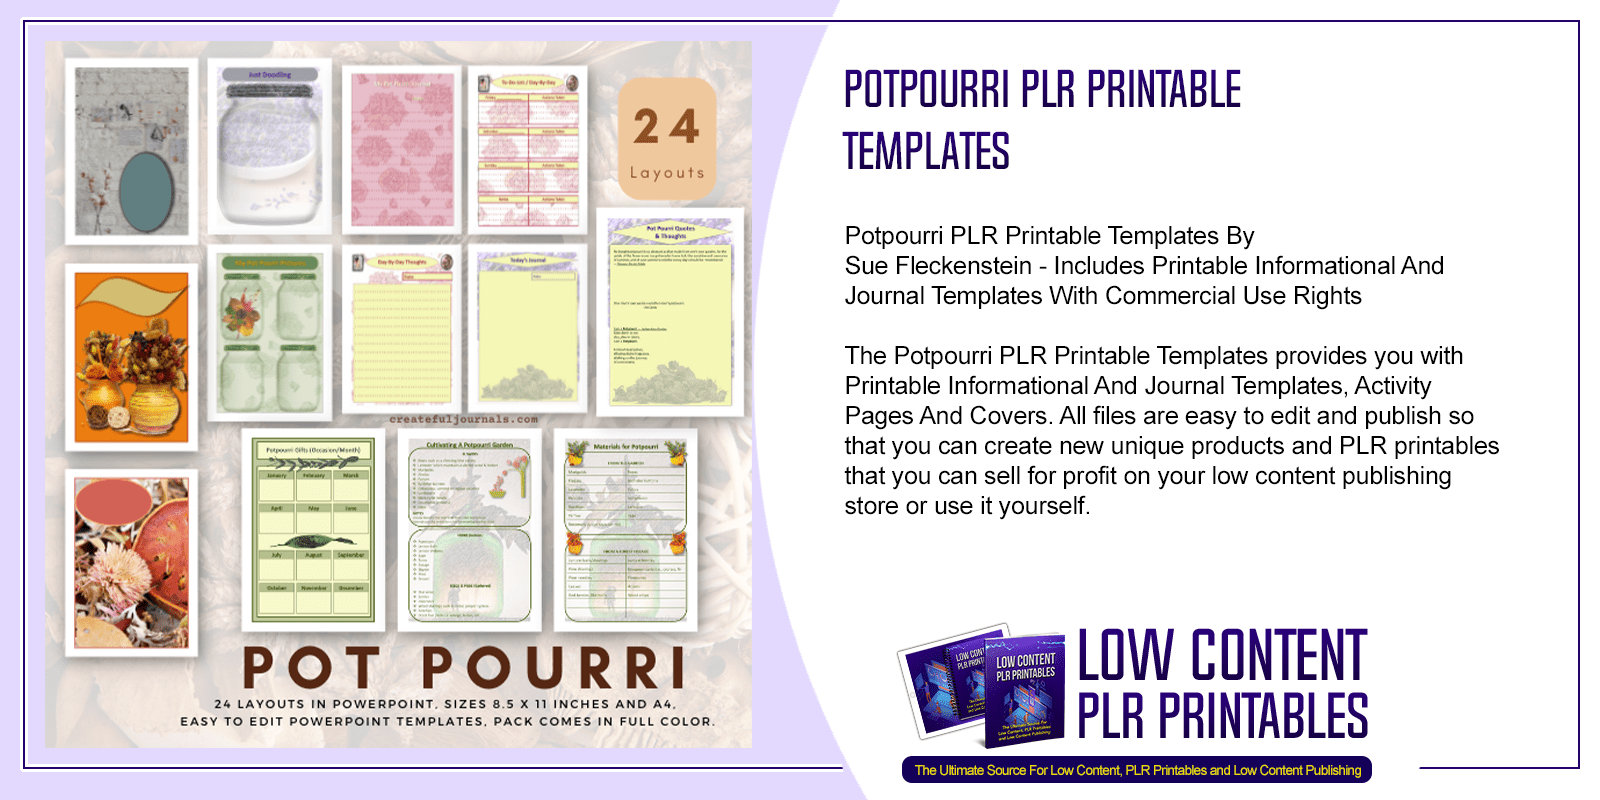 Potpourri PLR Printable Templates